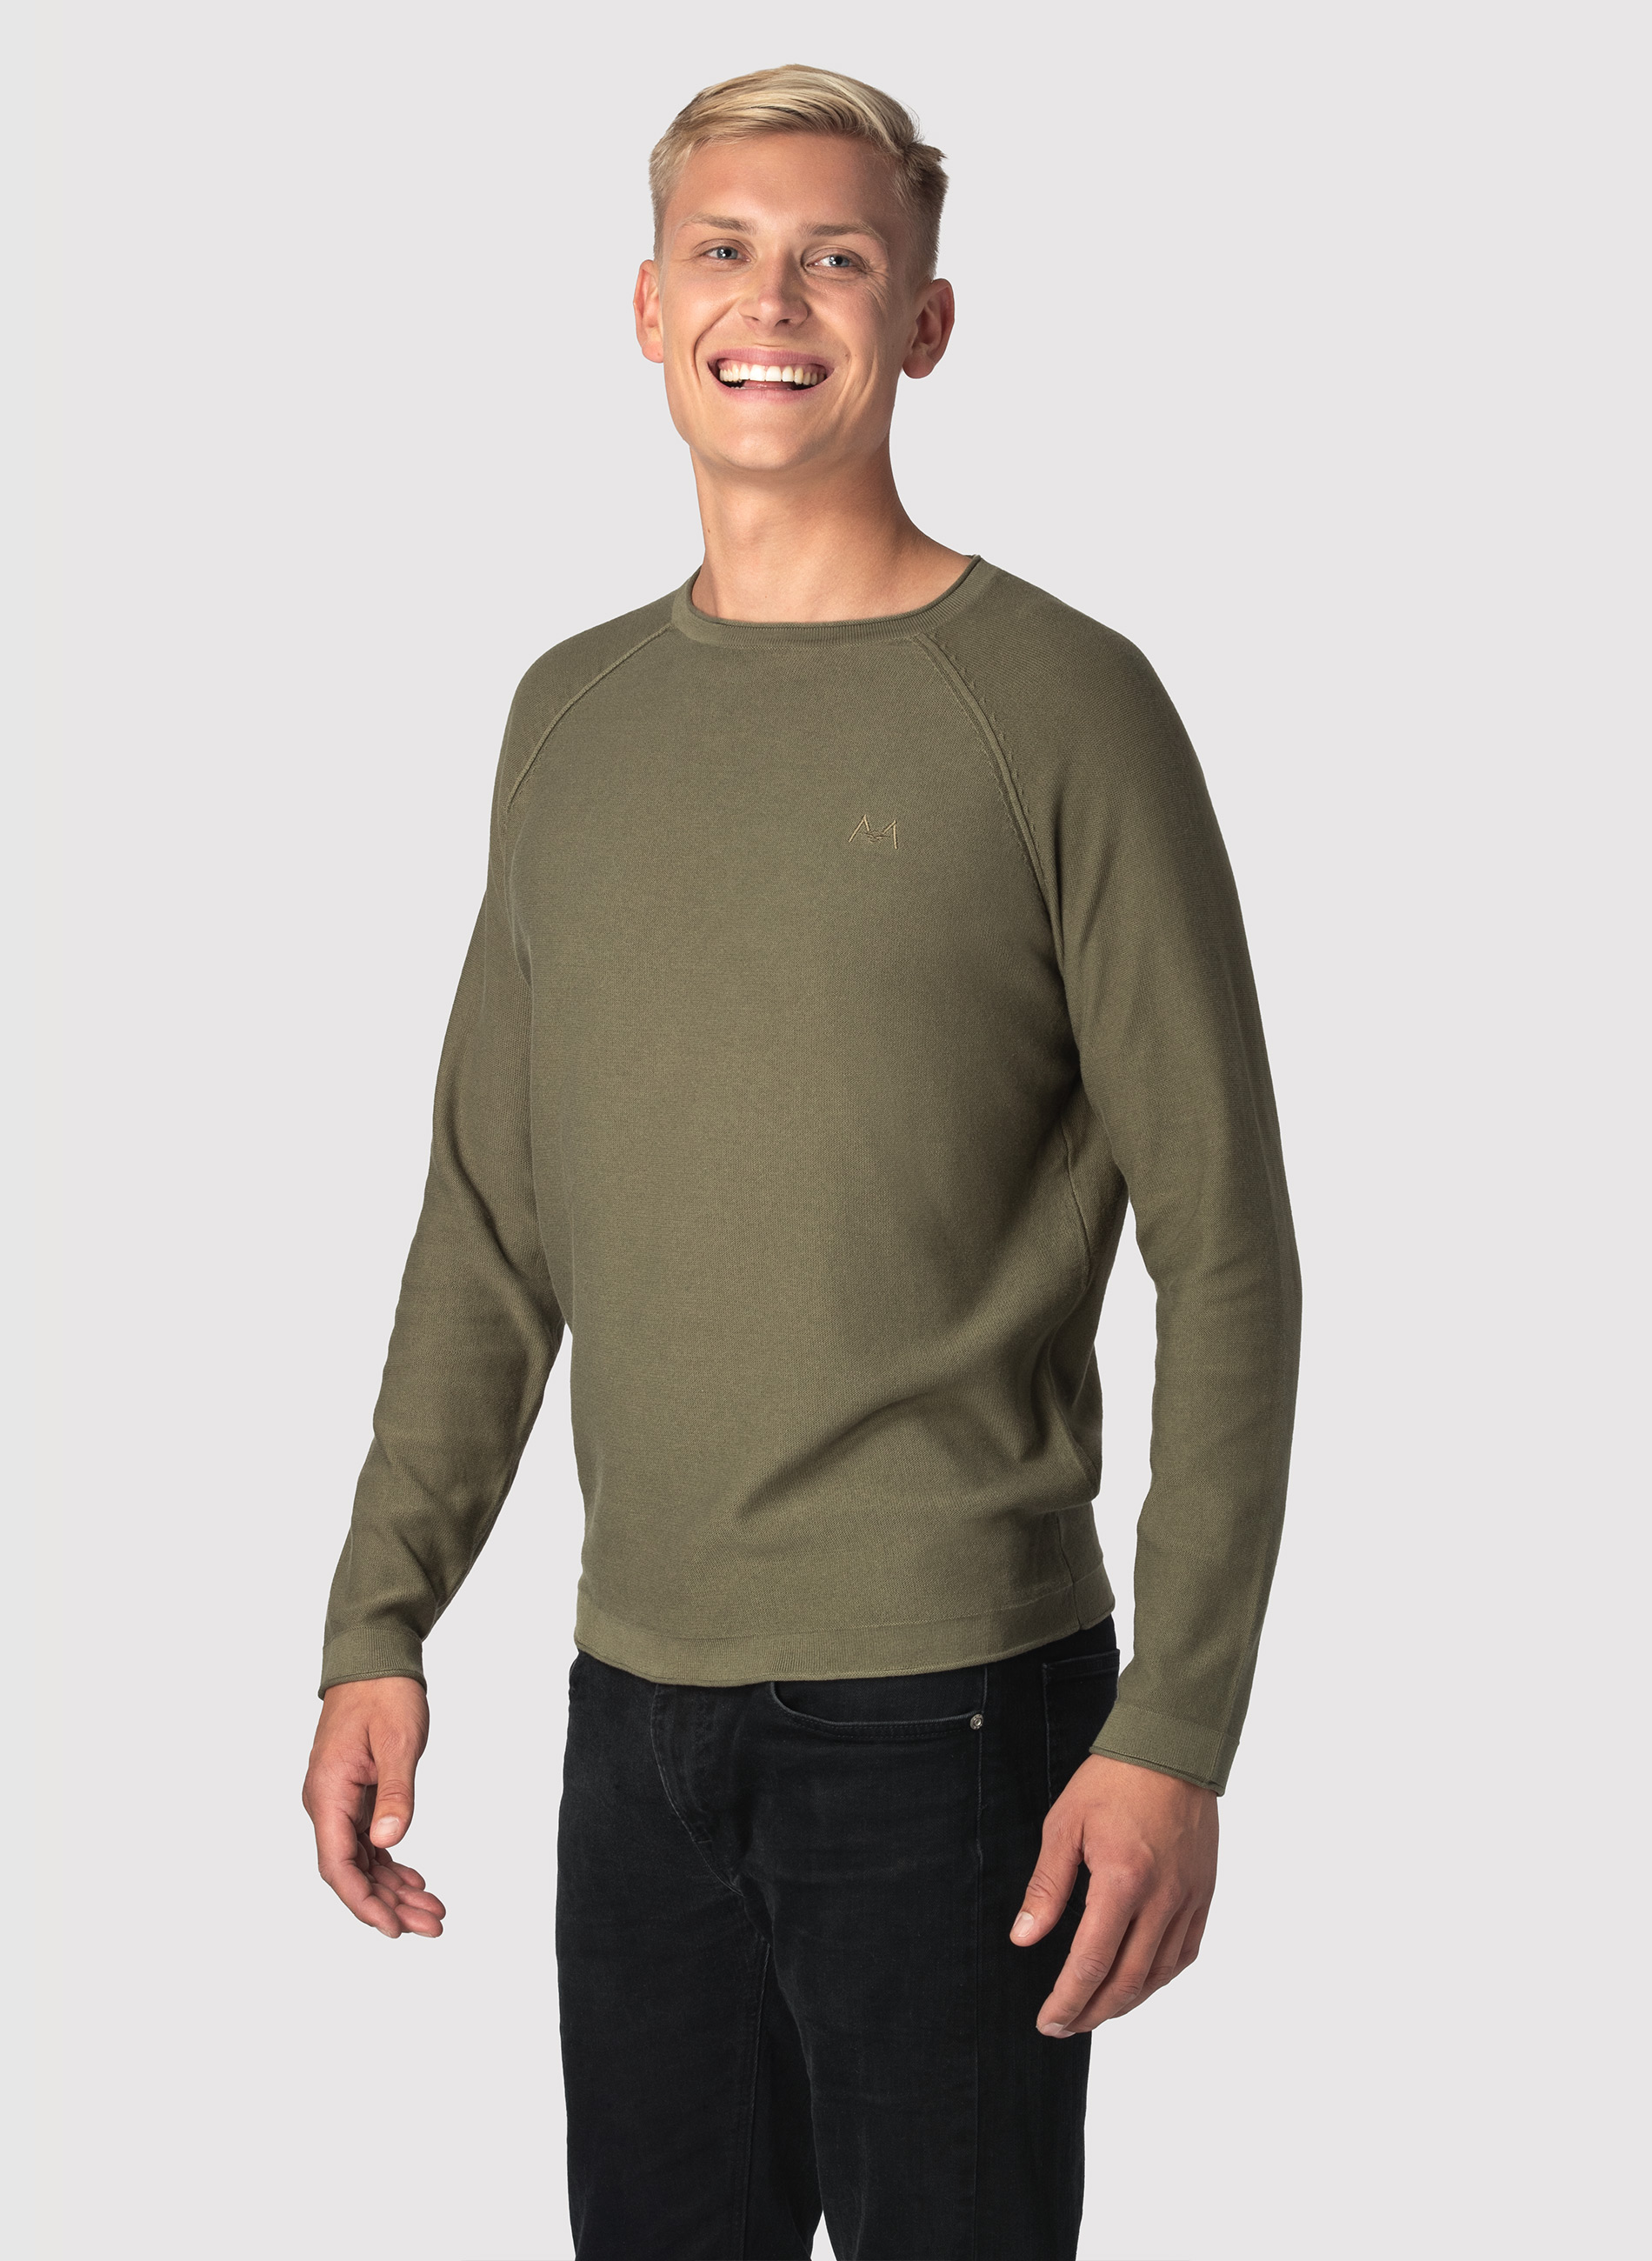 Olive Crew Neck Sweater Men's